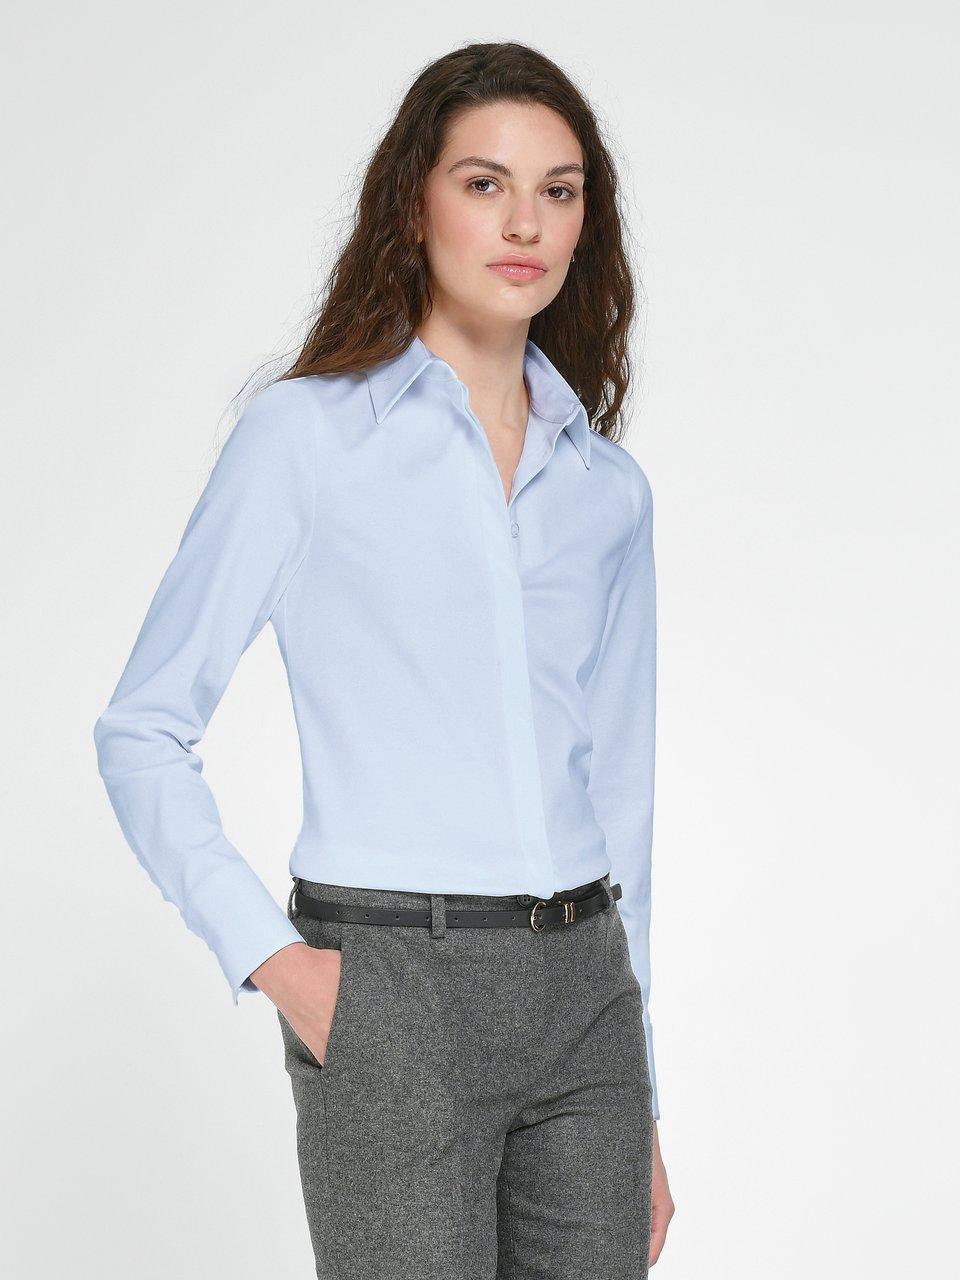 Fadenmeister Berlin - Jersey blouse van 100% katoen